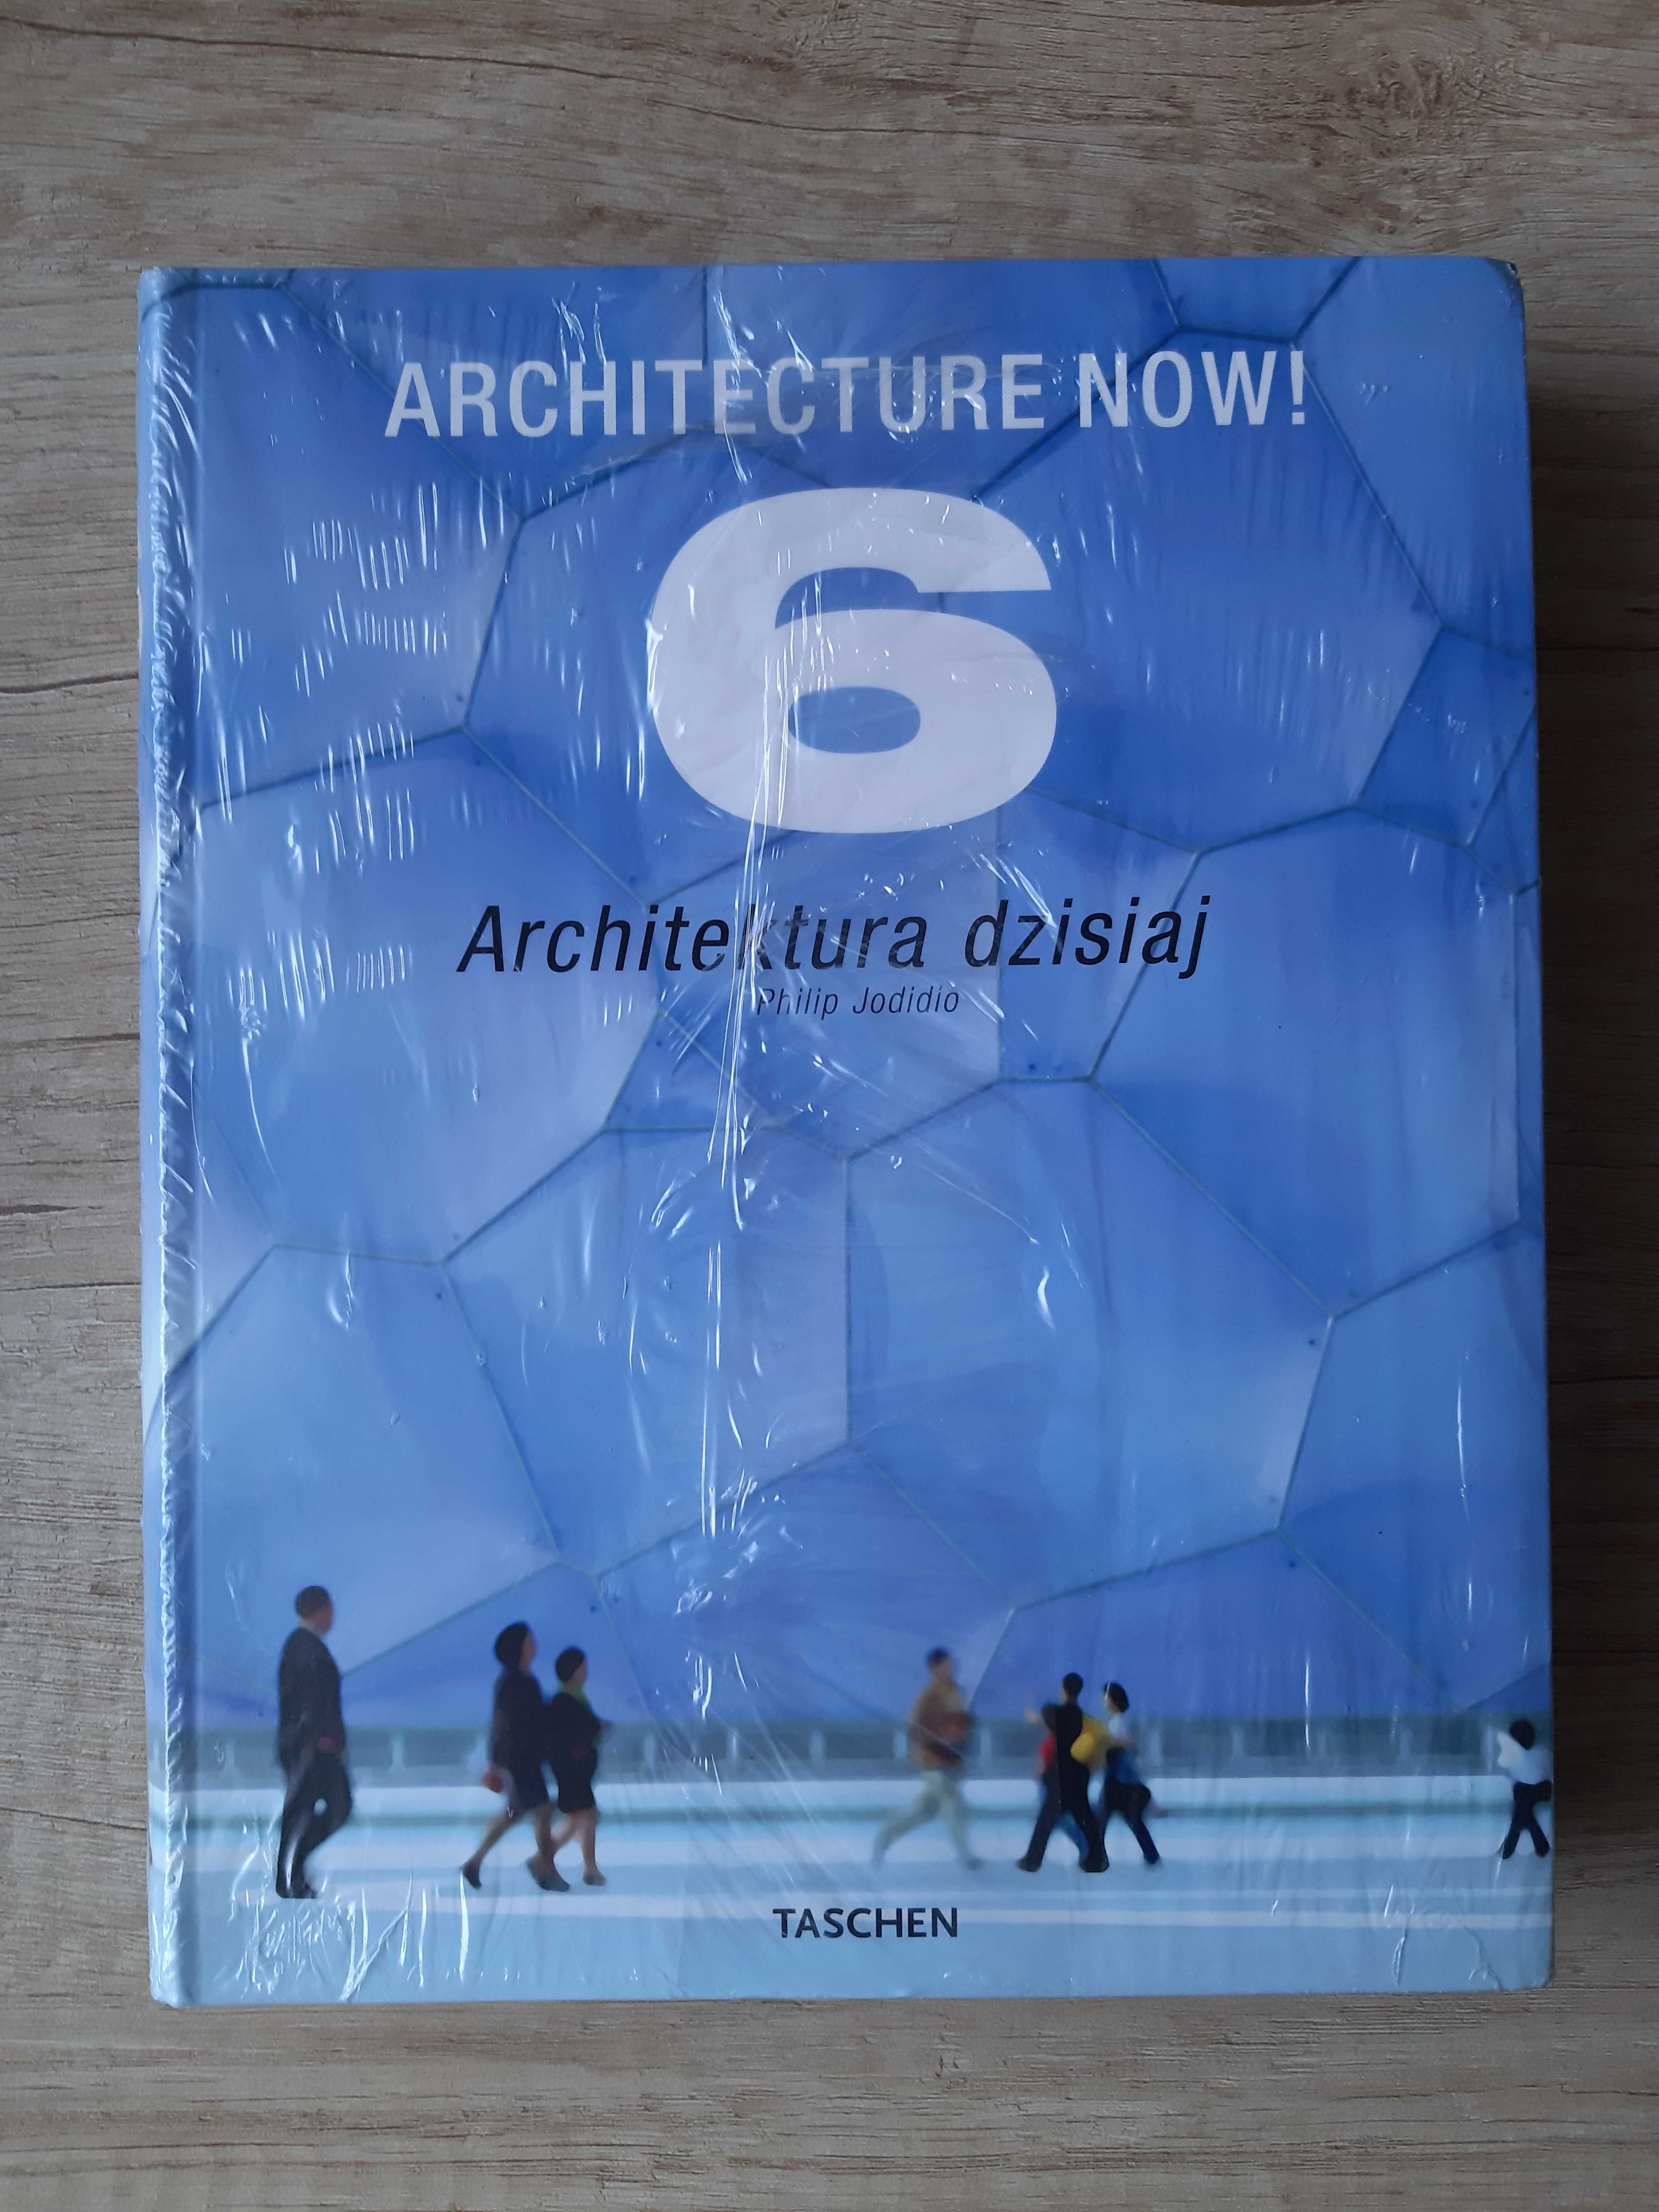 Architecture Now! 6 – Architektura dzisiaj – Philip Jodidio - Taschen